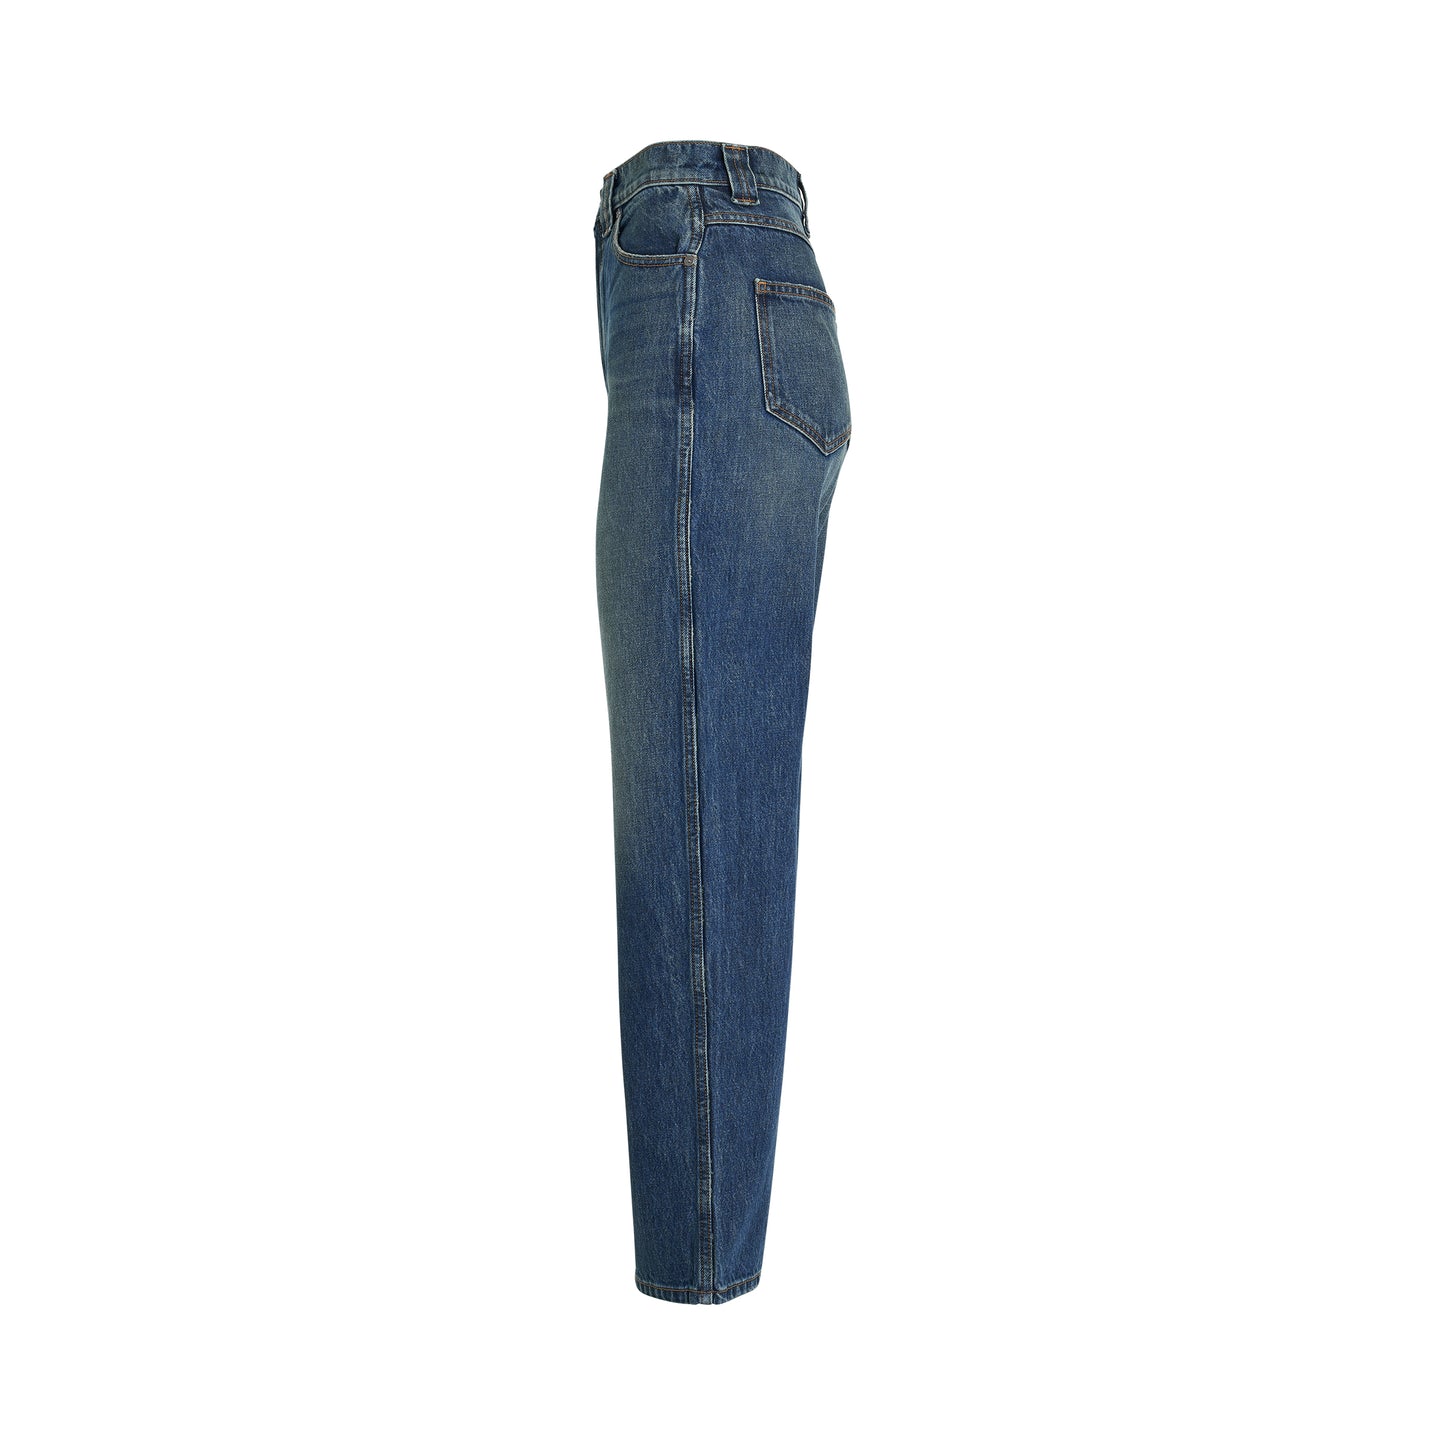 Shalbi Jeans in Stinson